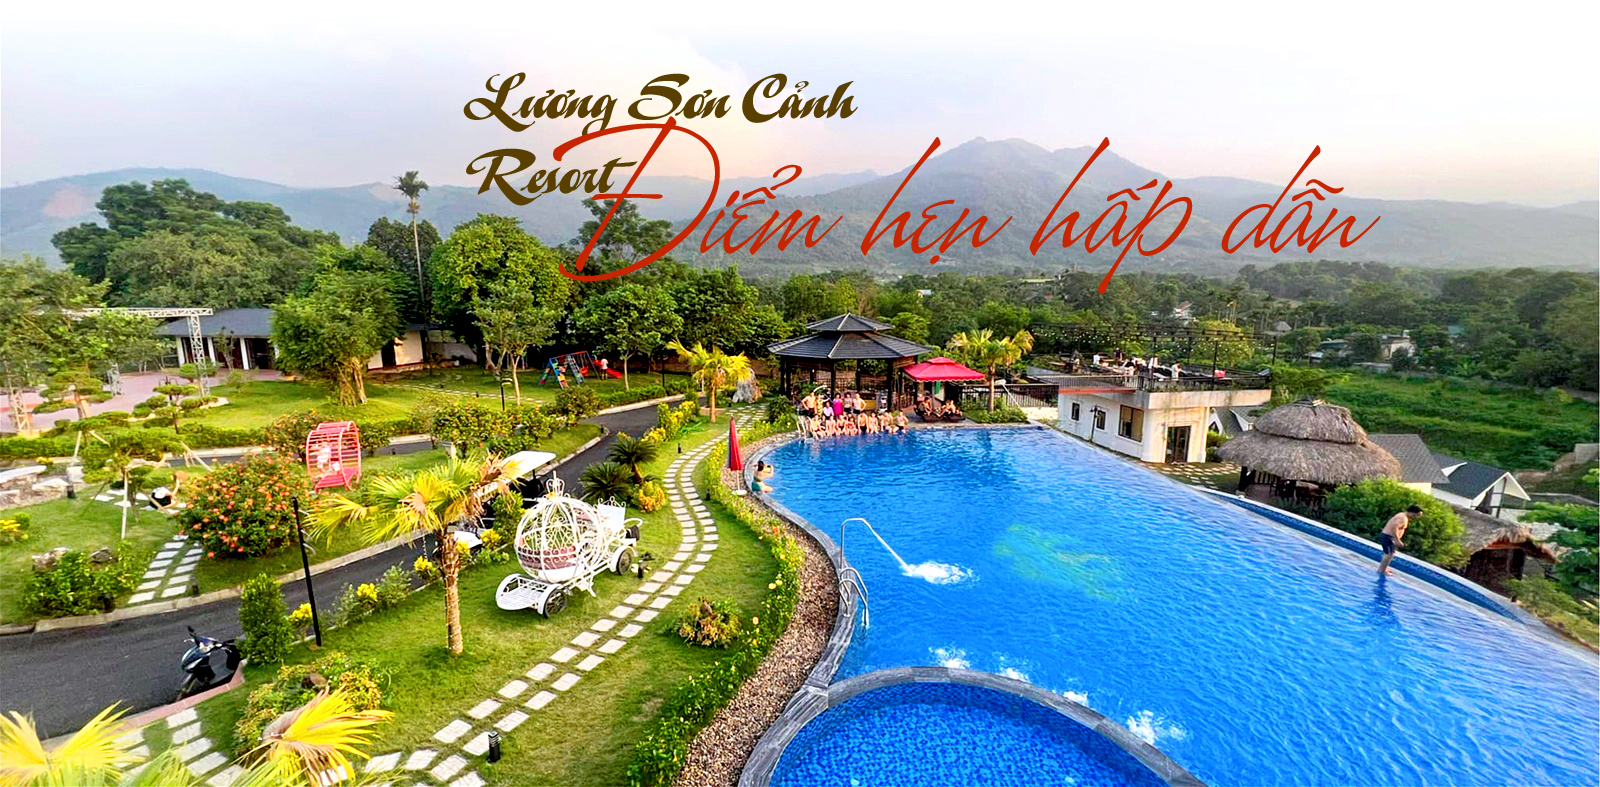 Lương Sơn Cảnh Resort - Điểm hẹn hấp dẫn